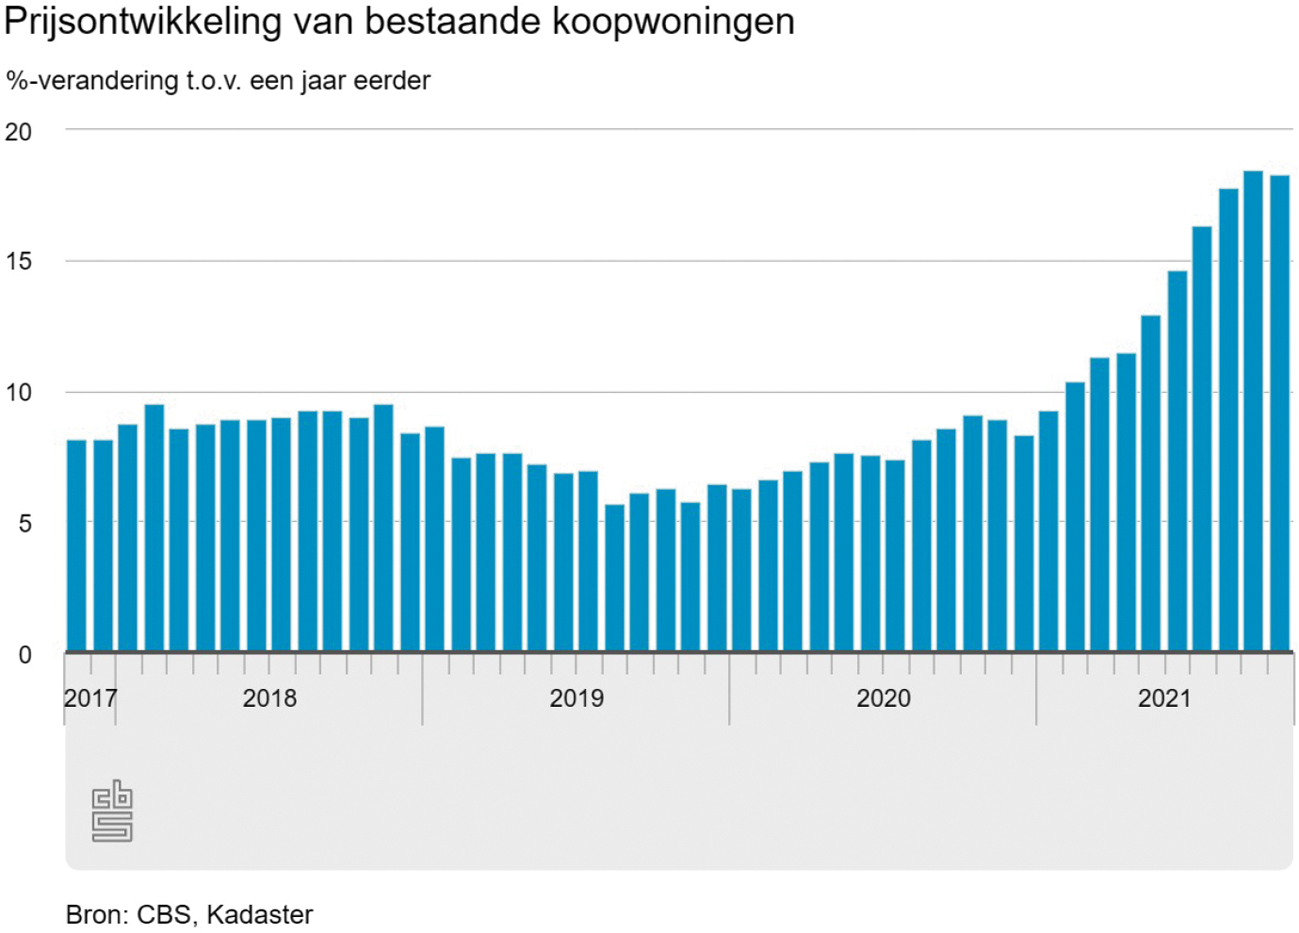 Grafiek 1: prijsontwikkelingen Nederland (%) van bestaande koopwoningen (bron: CBS, Kadaster)